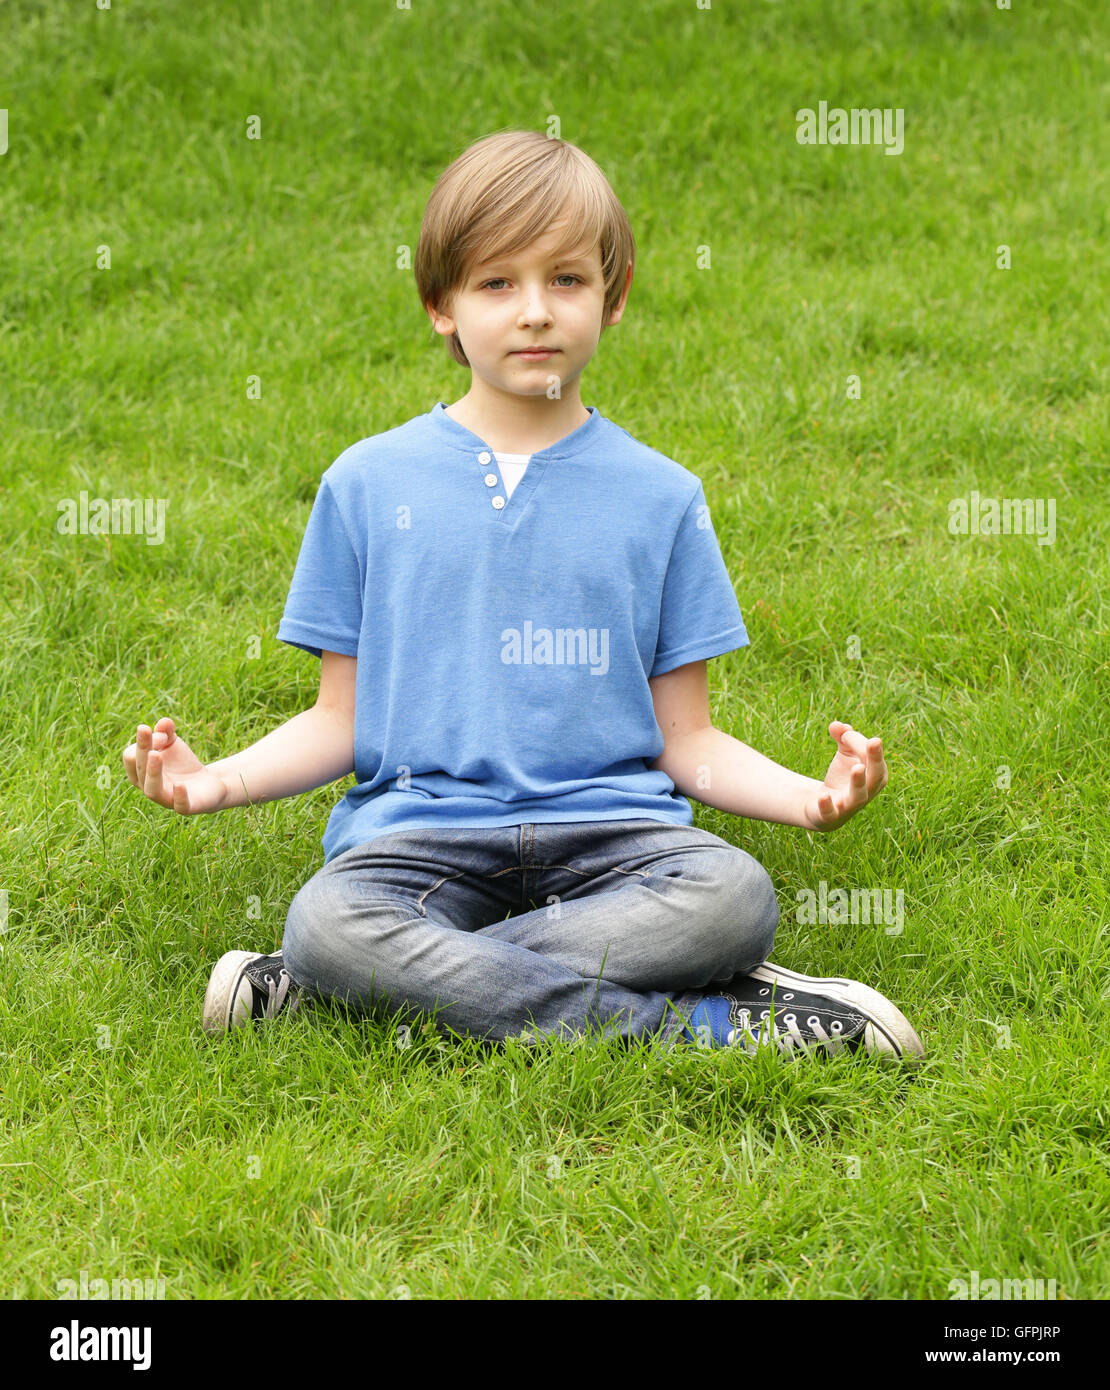 Cute blonde garçon assis sur l'herbe verte et méditer Banque D'Images